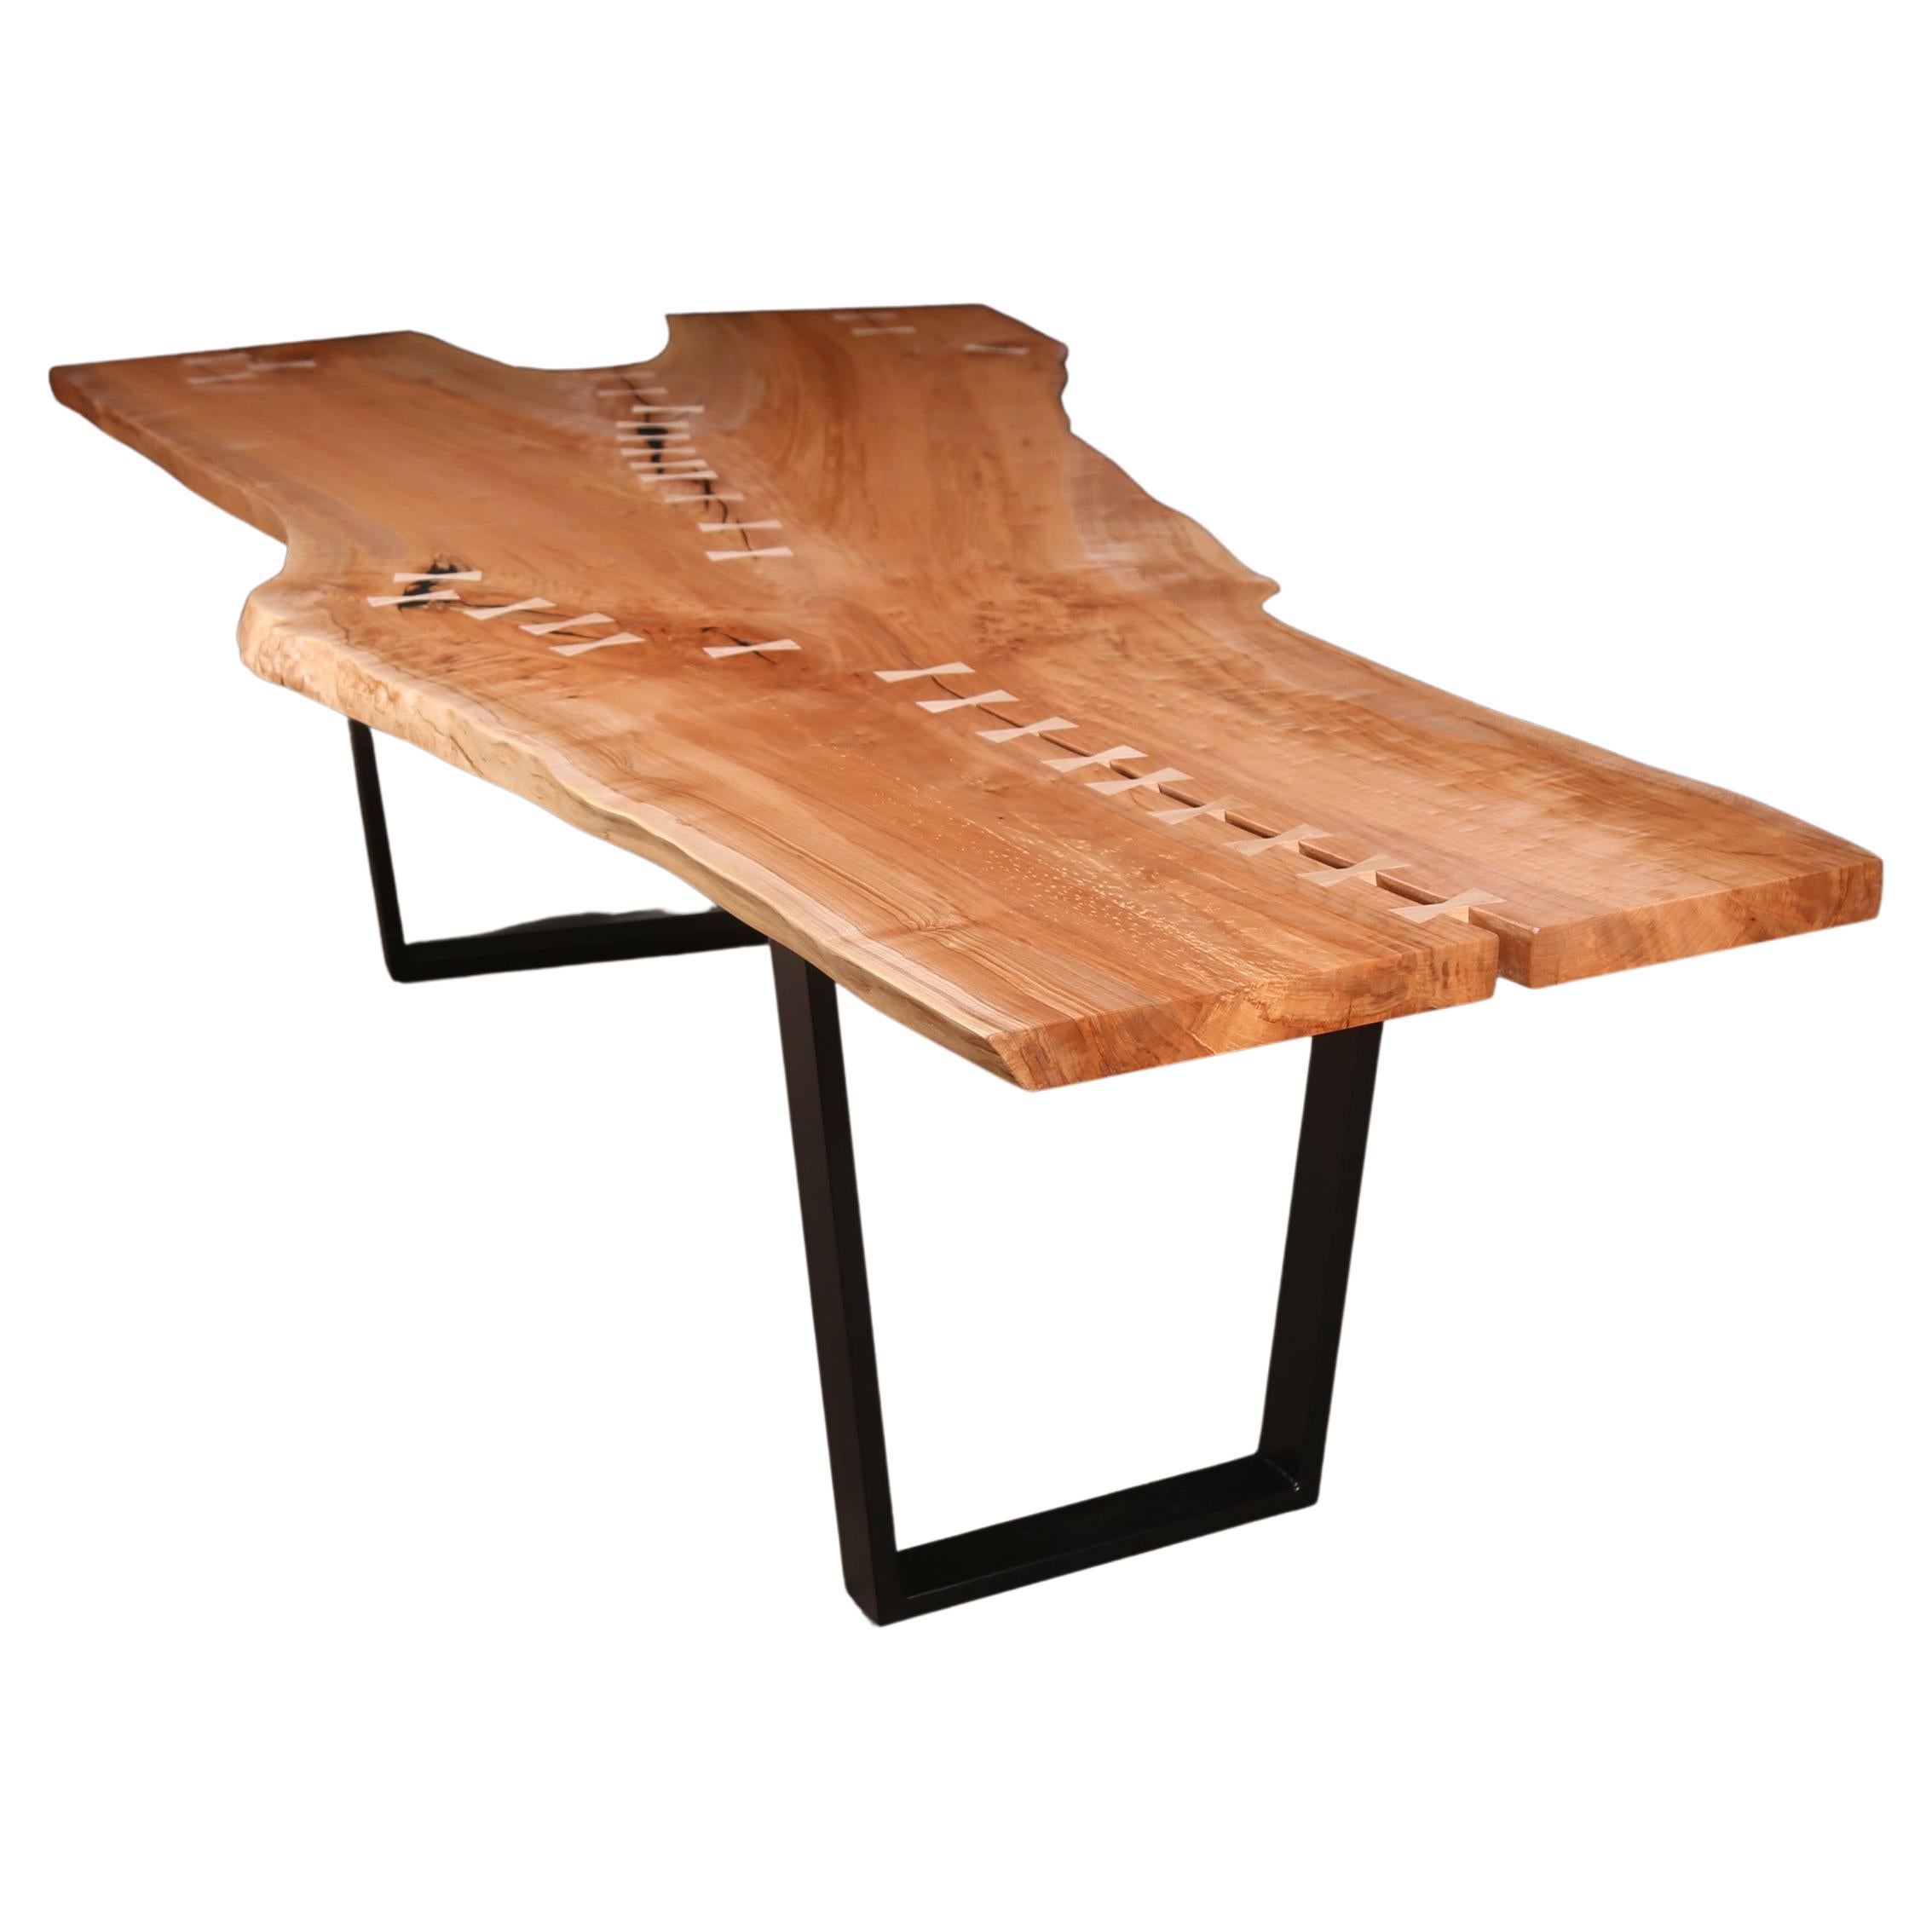 Table en érable à bord vif sur mesure, une seule dalle avec incrustation de nœud papillon, base métallique en vente